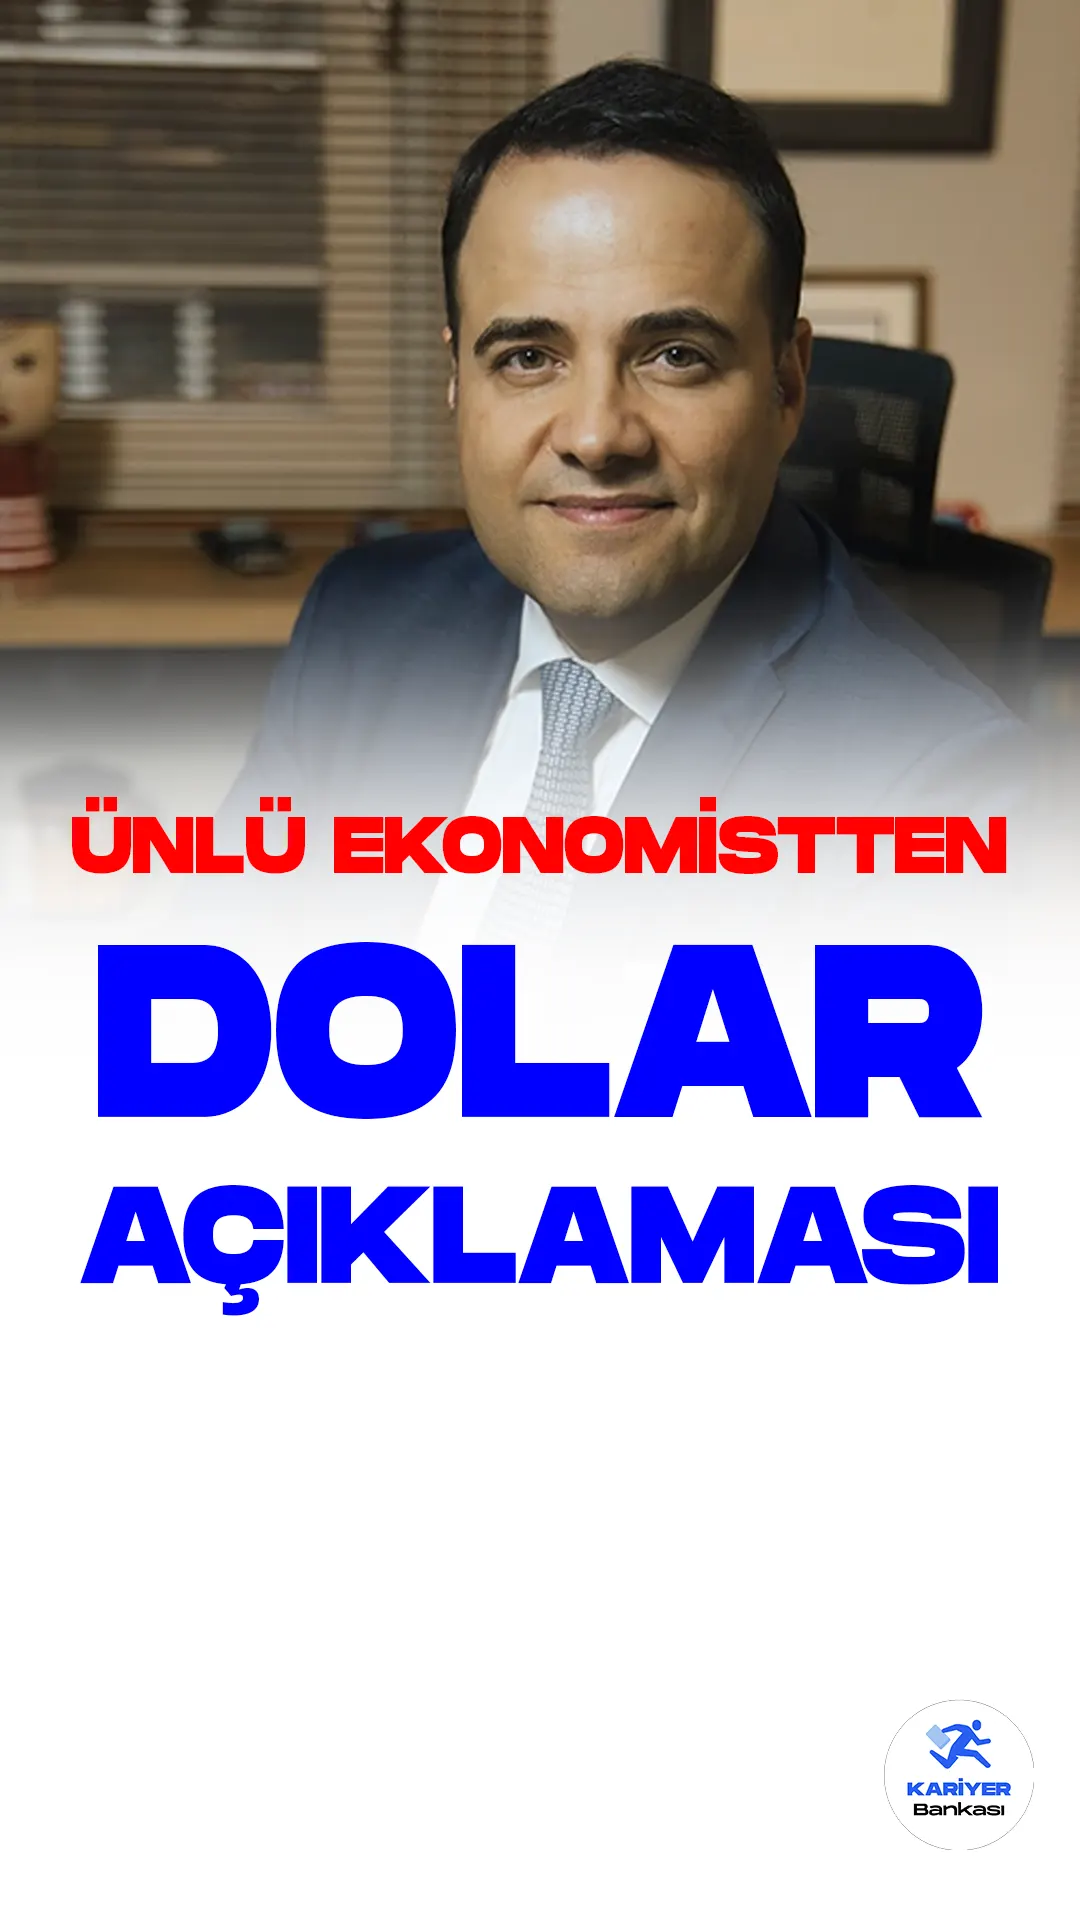 Ekonomist Özgür Demirtaş, döviz kurlarının Kapalı Çarşı'da 20 TL seviyesinin üzerine çıktığını yazarak, gerçek dolar kurunun bu seviyelerde olduğunu iddia etti.